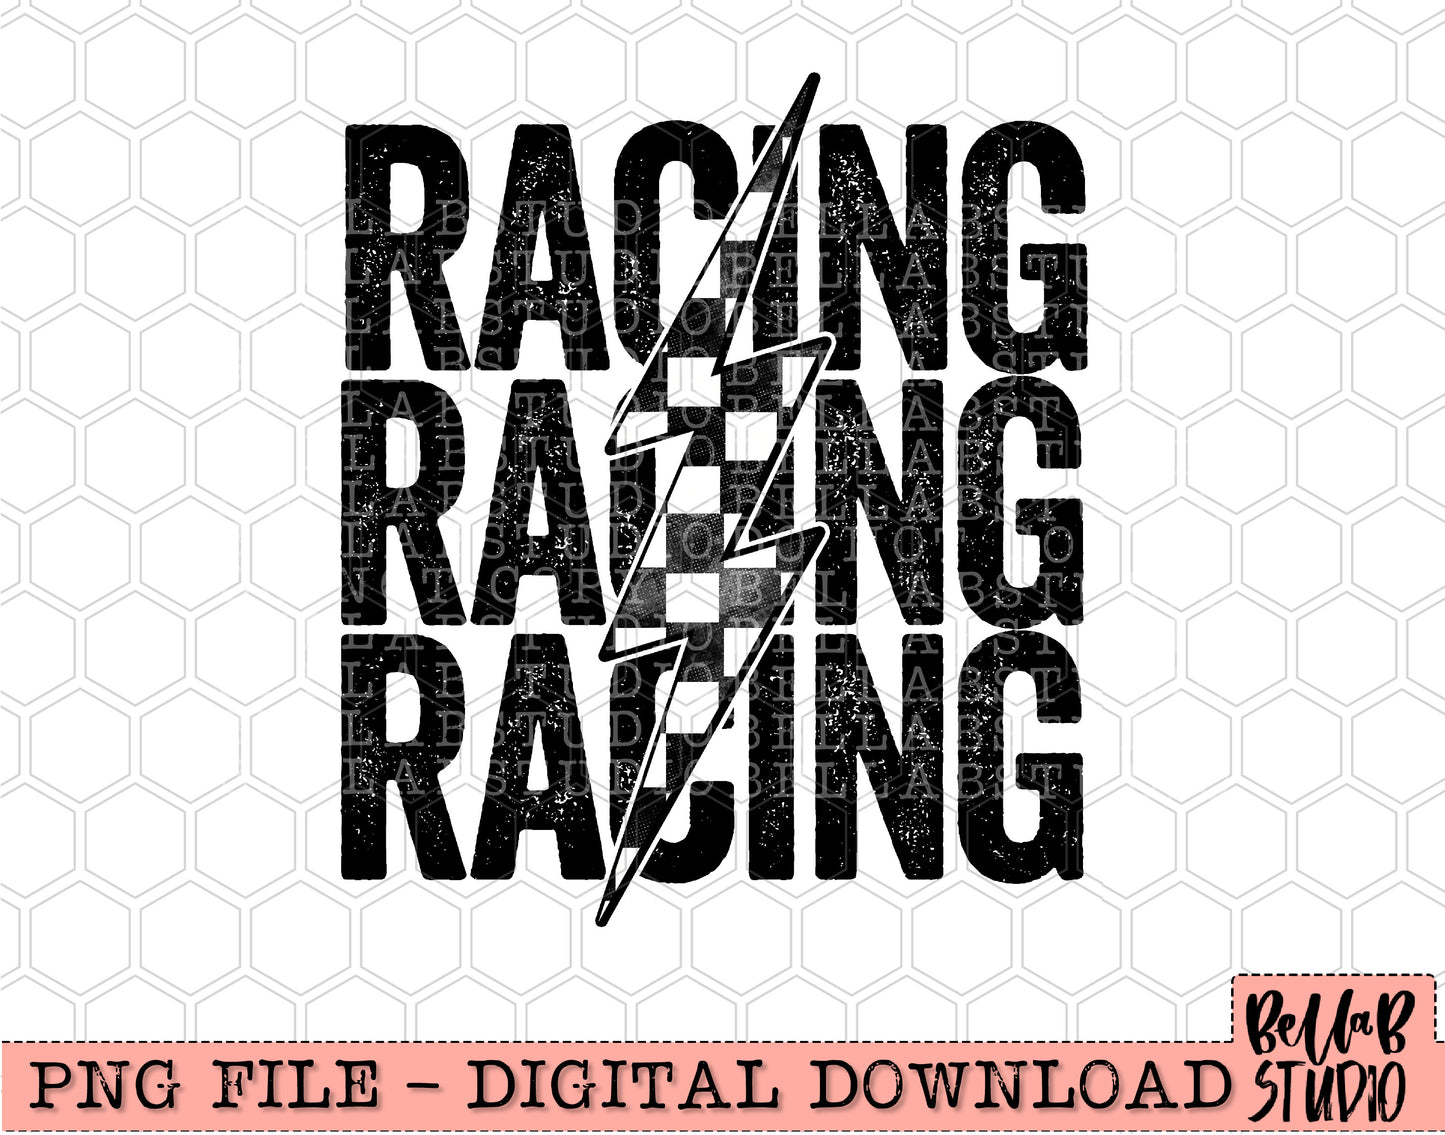 Racing Stacked Bolt PNG Digital Design